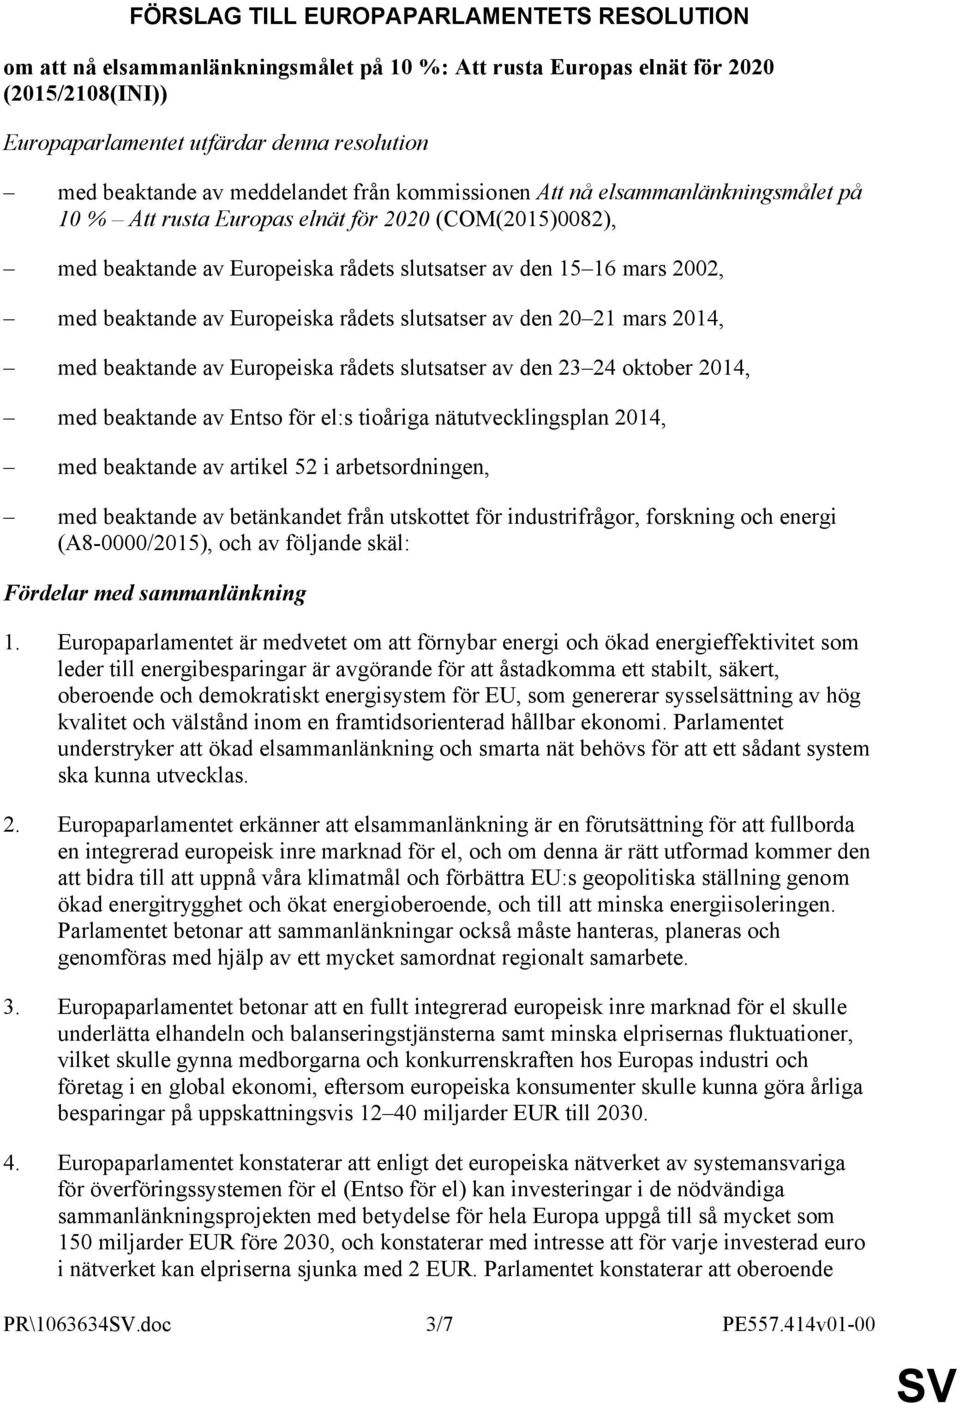 beaktande av Europeiska rådets slutsatser av den 20 21 mars 2014, med beaktande av Europeiska rådets slutsatser av den 23 24 oktober 2014, med beaktande av Entso för el:s tioåriga nätutvecklingsplan